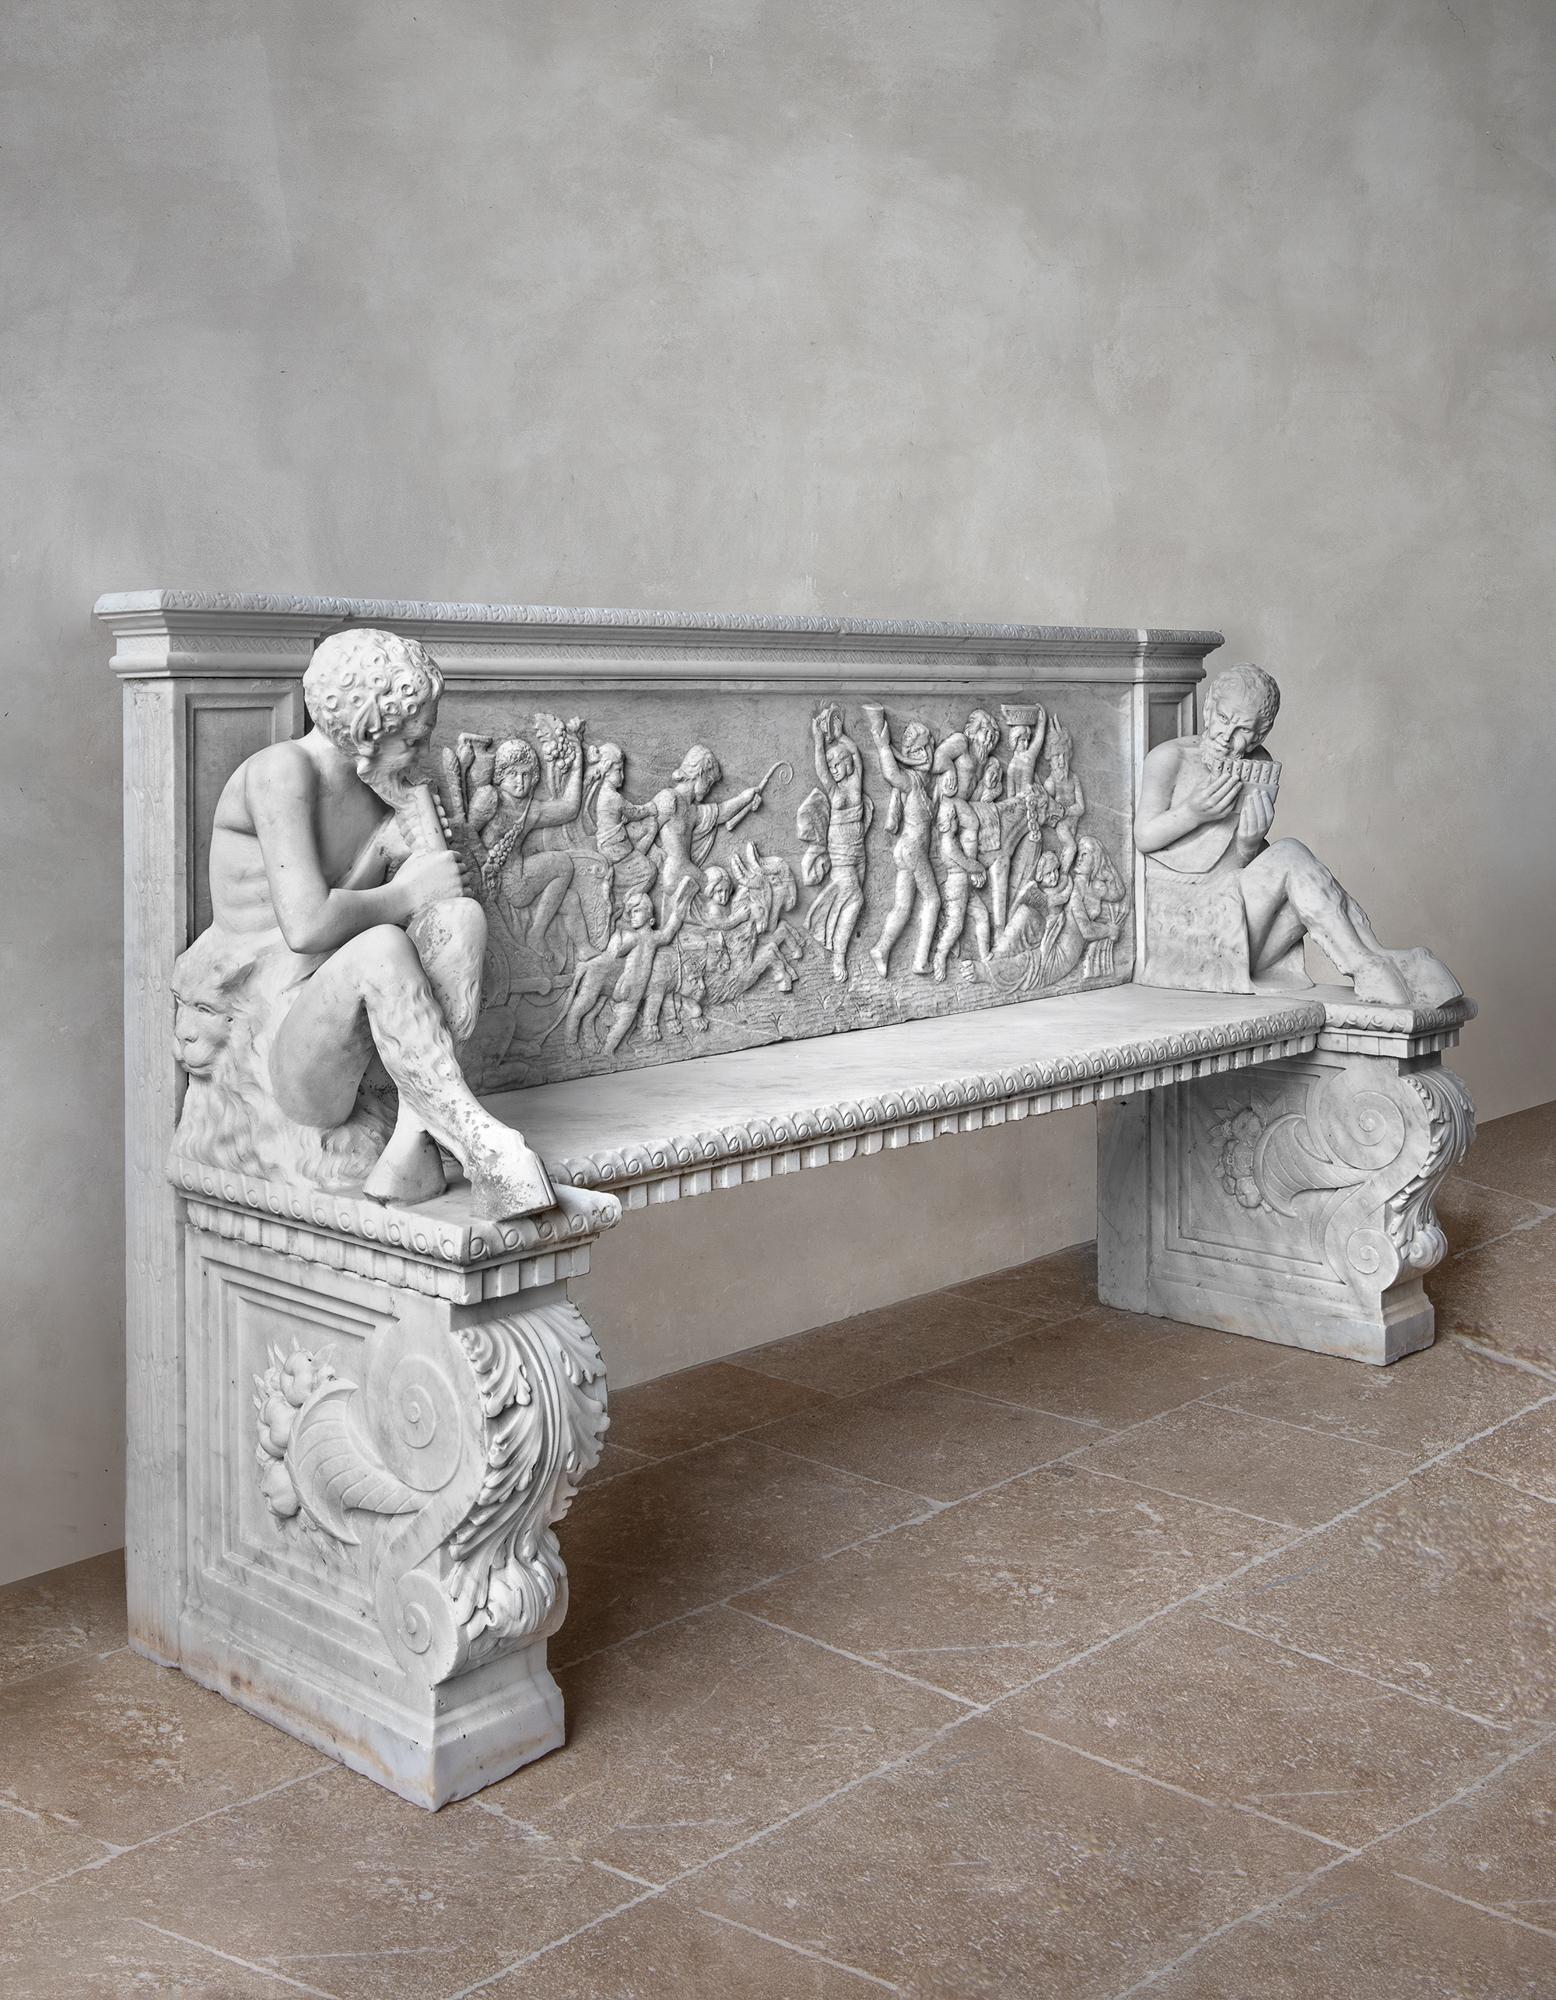 Rare et impressionnante banquette néoclassique en marbre blanc sculpté. Fin du XIXe siècle Italien, Florentine.

Dossier avec sculpture en relief de Bacchus en procession triomphale, accoudoirs représentant des satyres allongés avec des pipes à